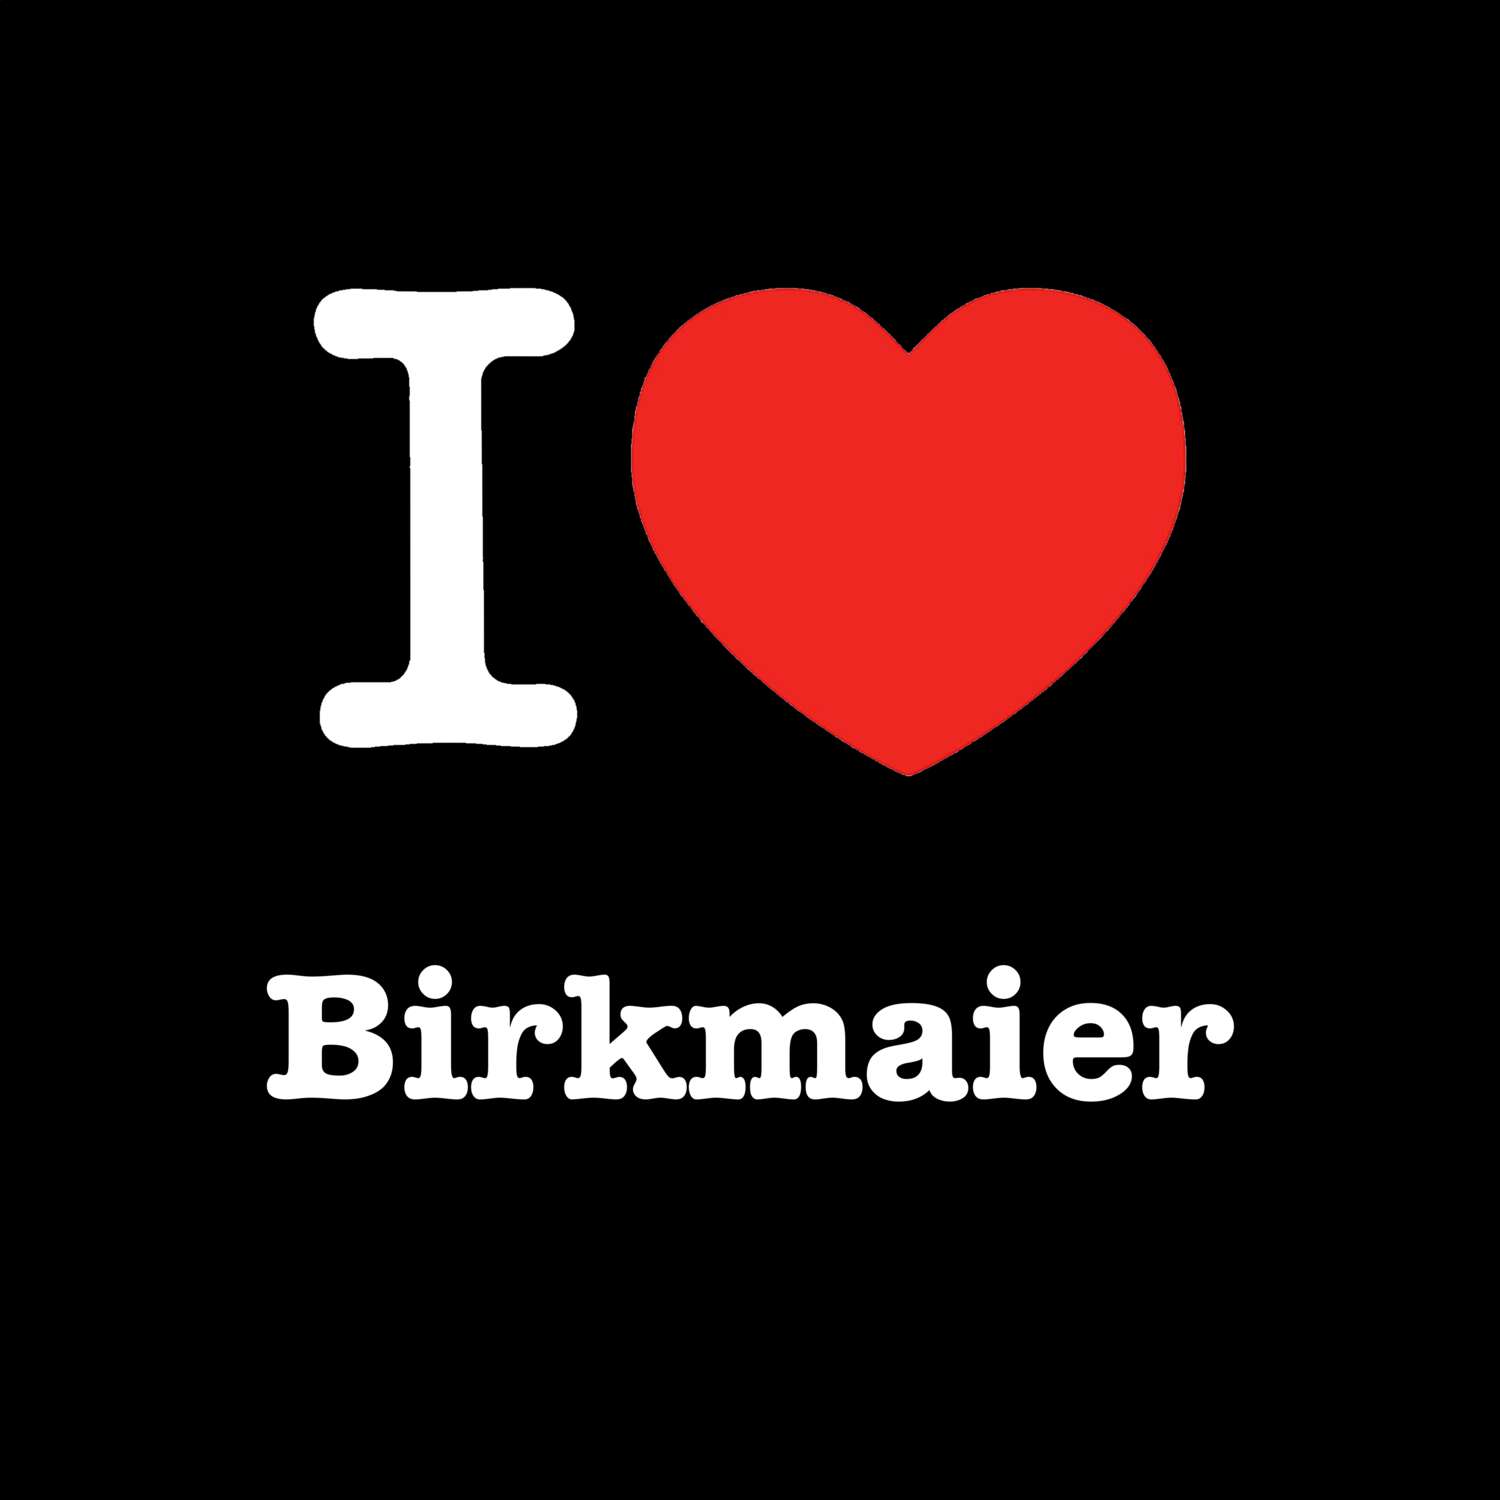 Birkmaier T-Shirt »I love«